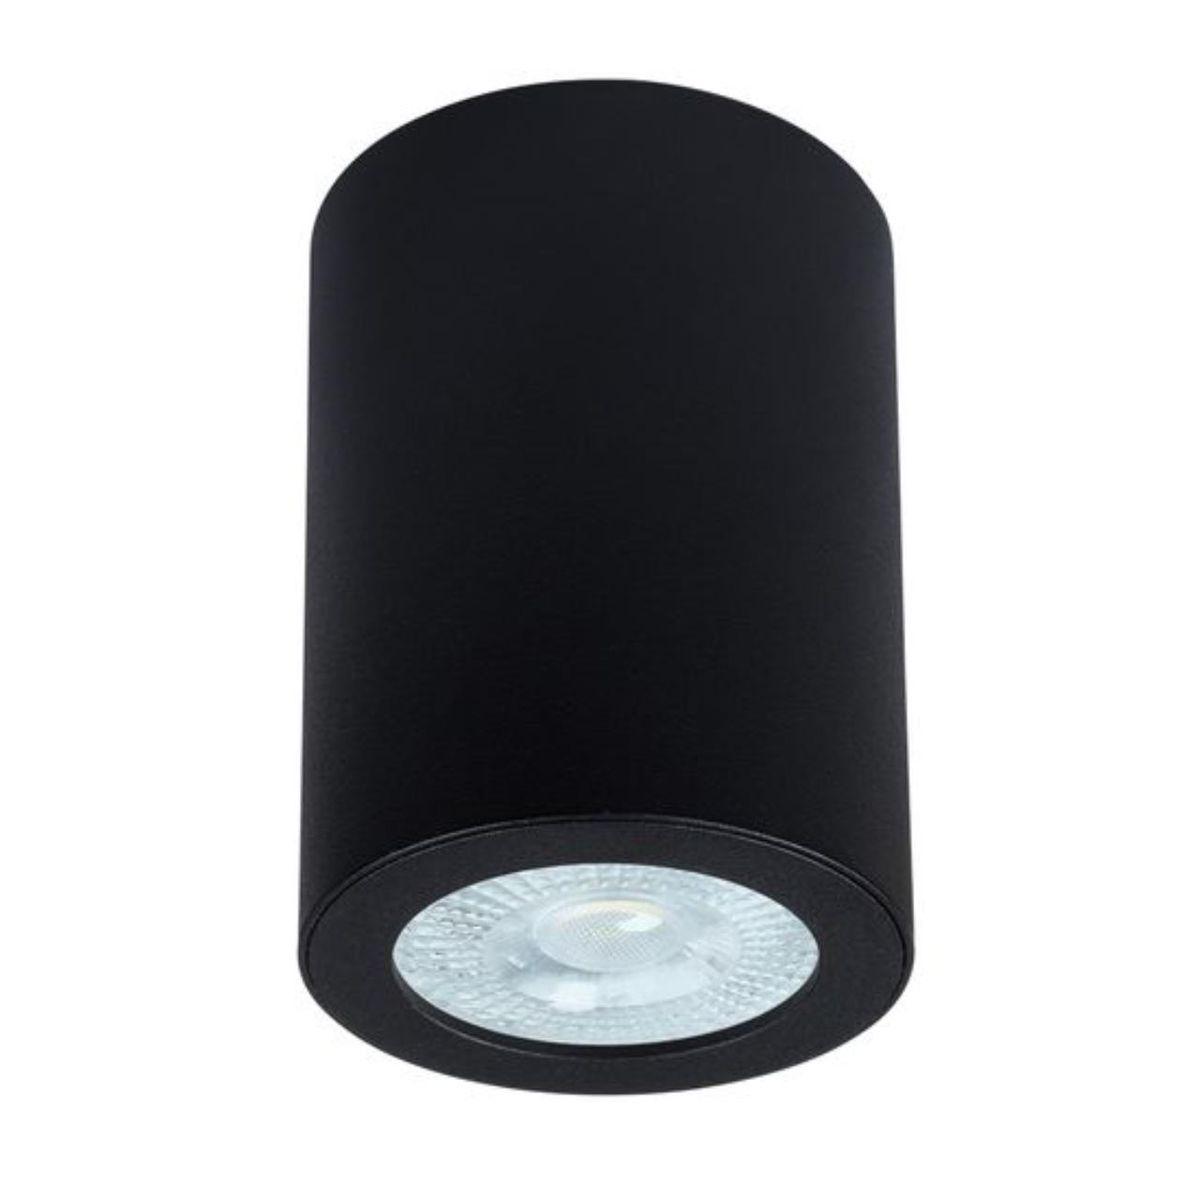 Потолочный светильник Arte Lamp Tino A1468PL-1BK